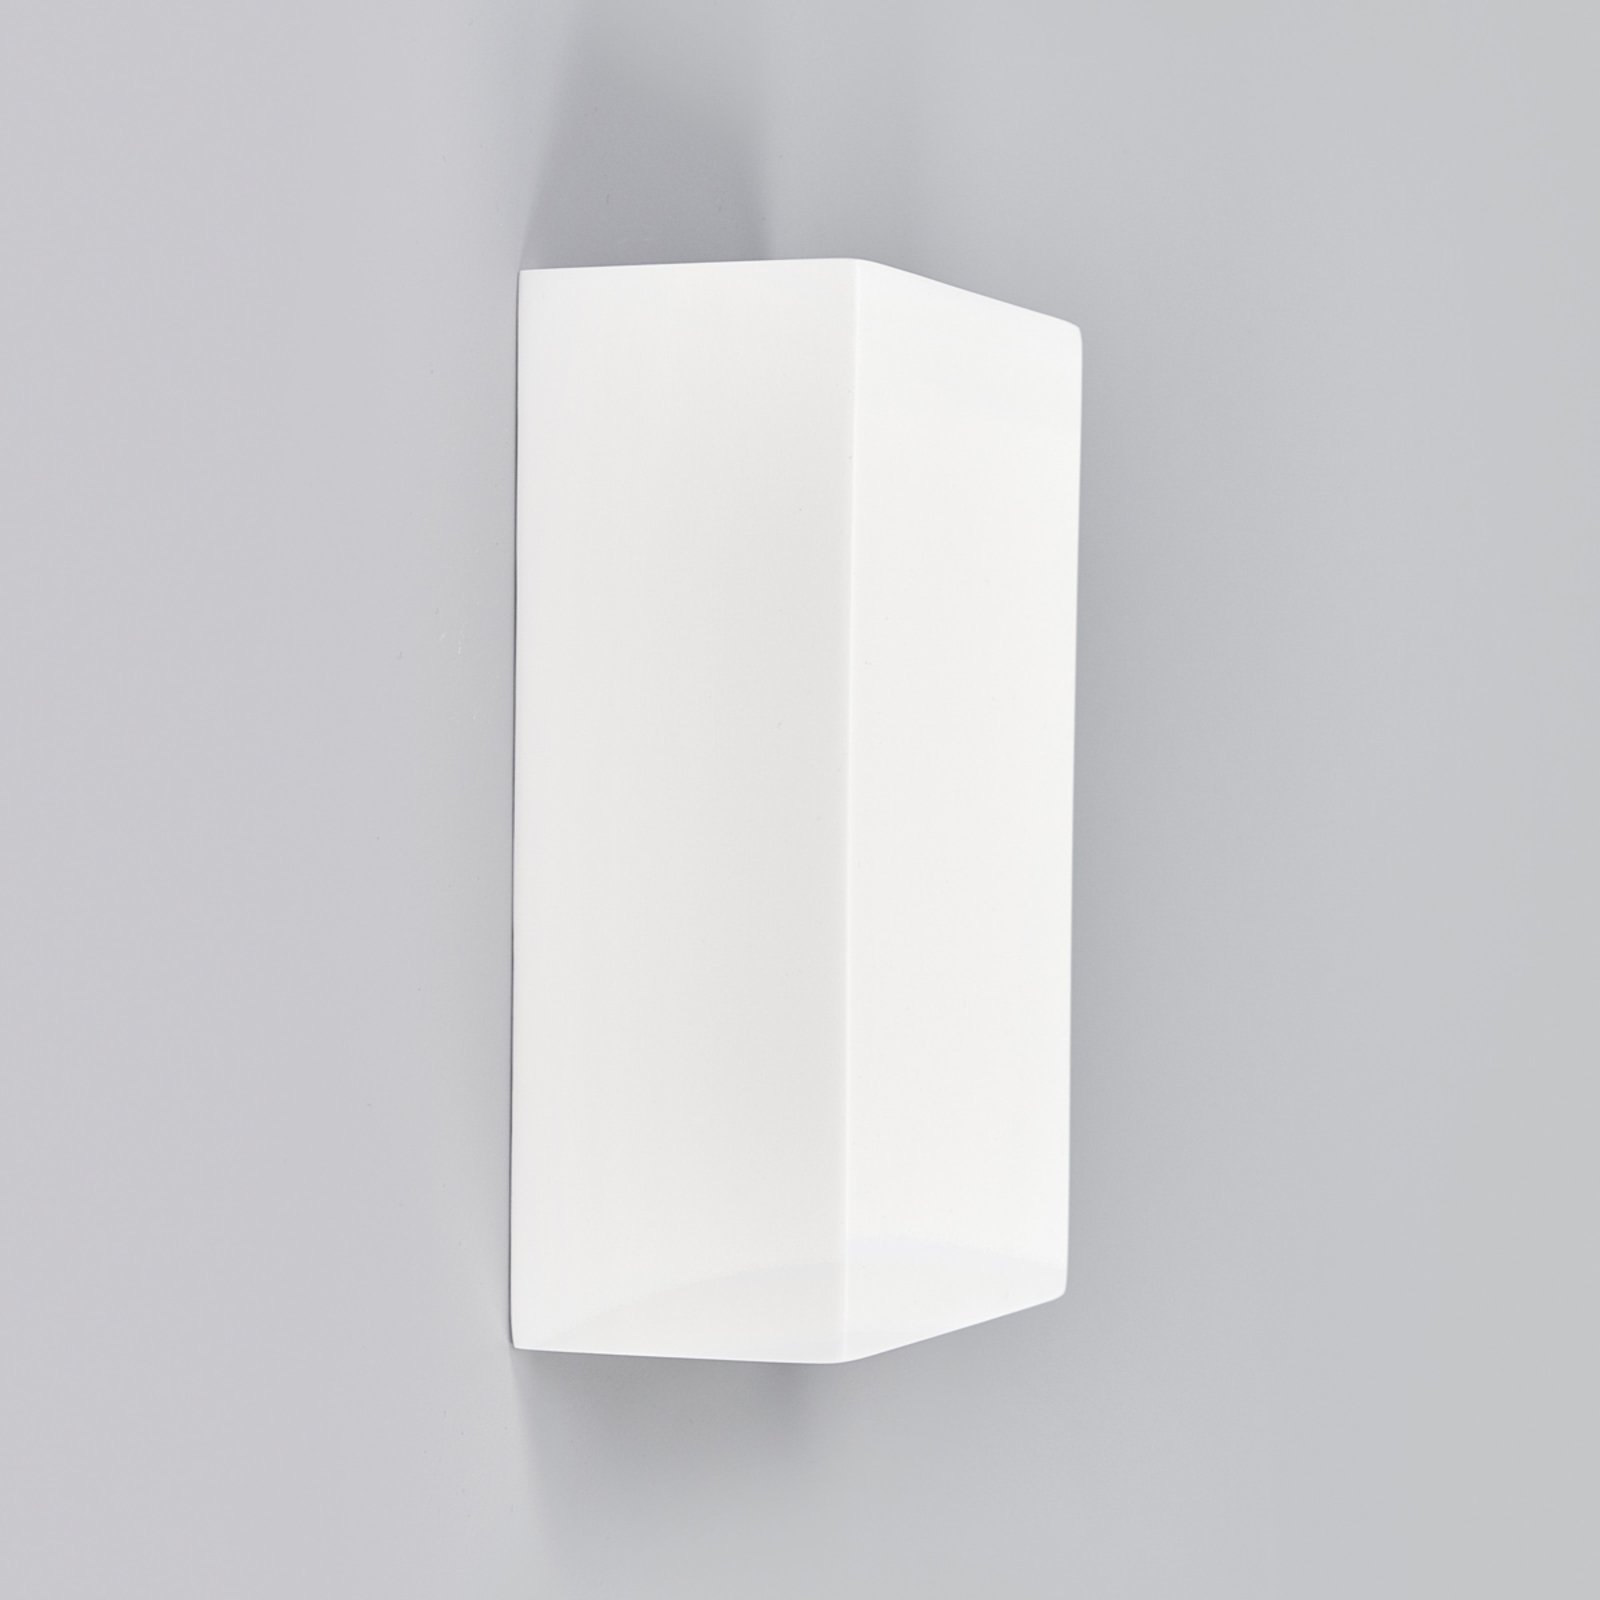 LED-vägglampa Fabiola av gips, höjd 16 cm